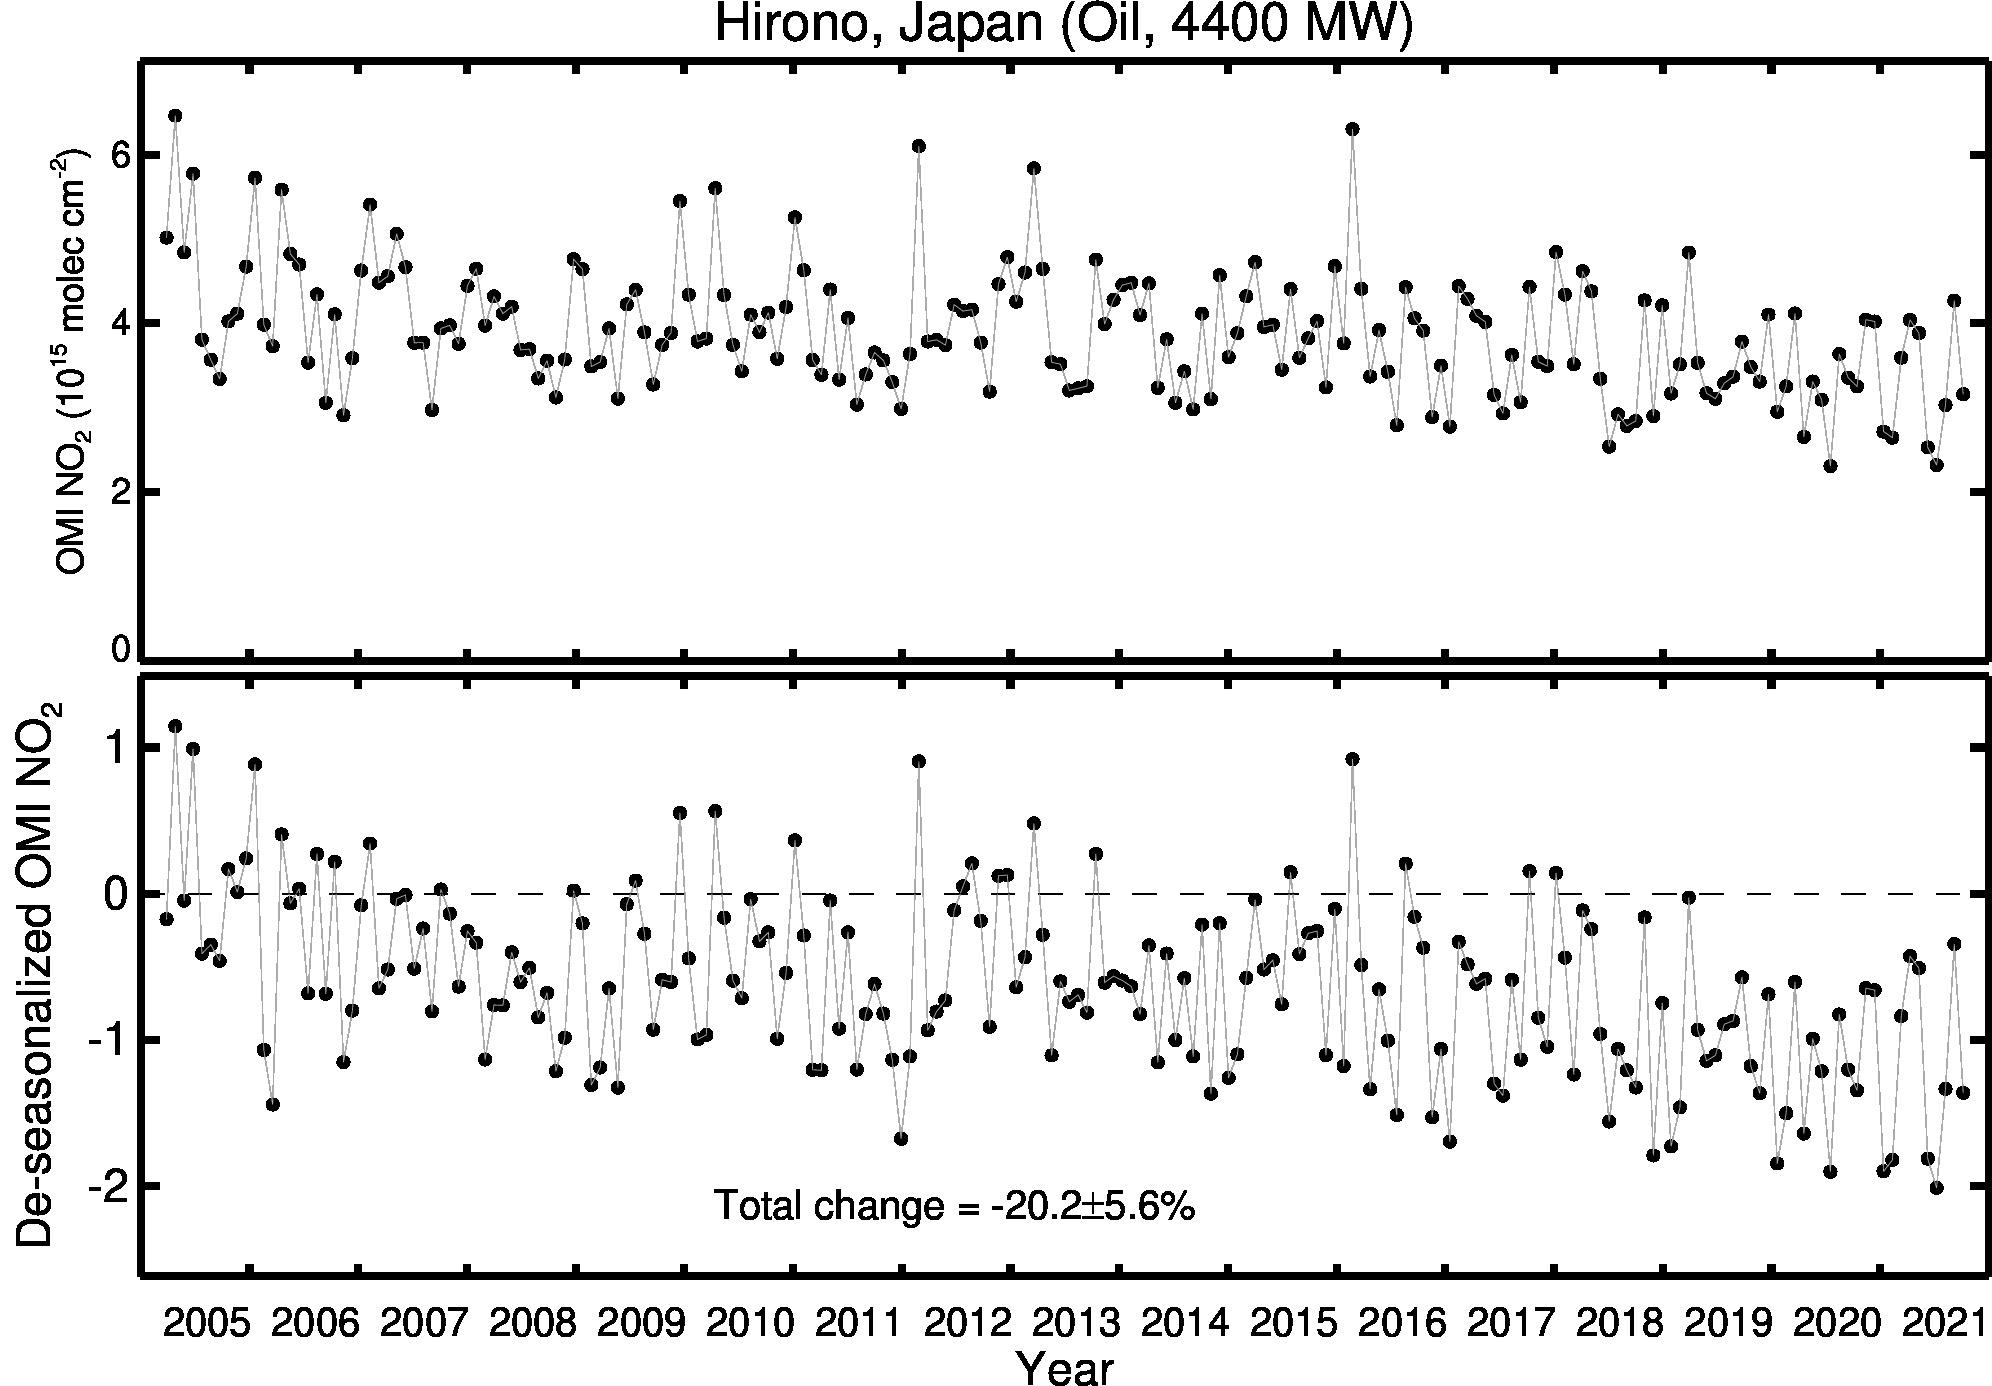 Hirono Line Plot 2005-2021